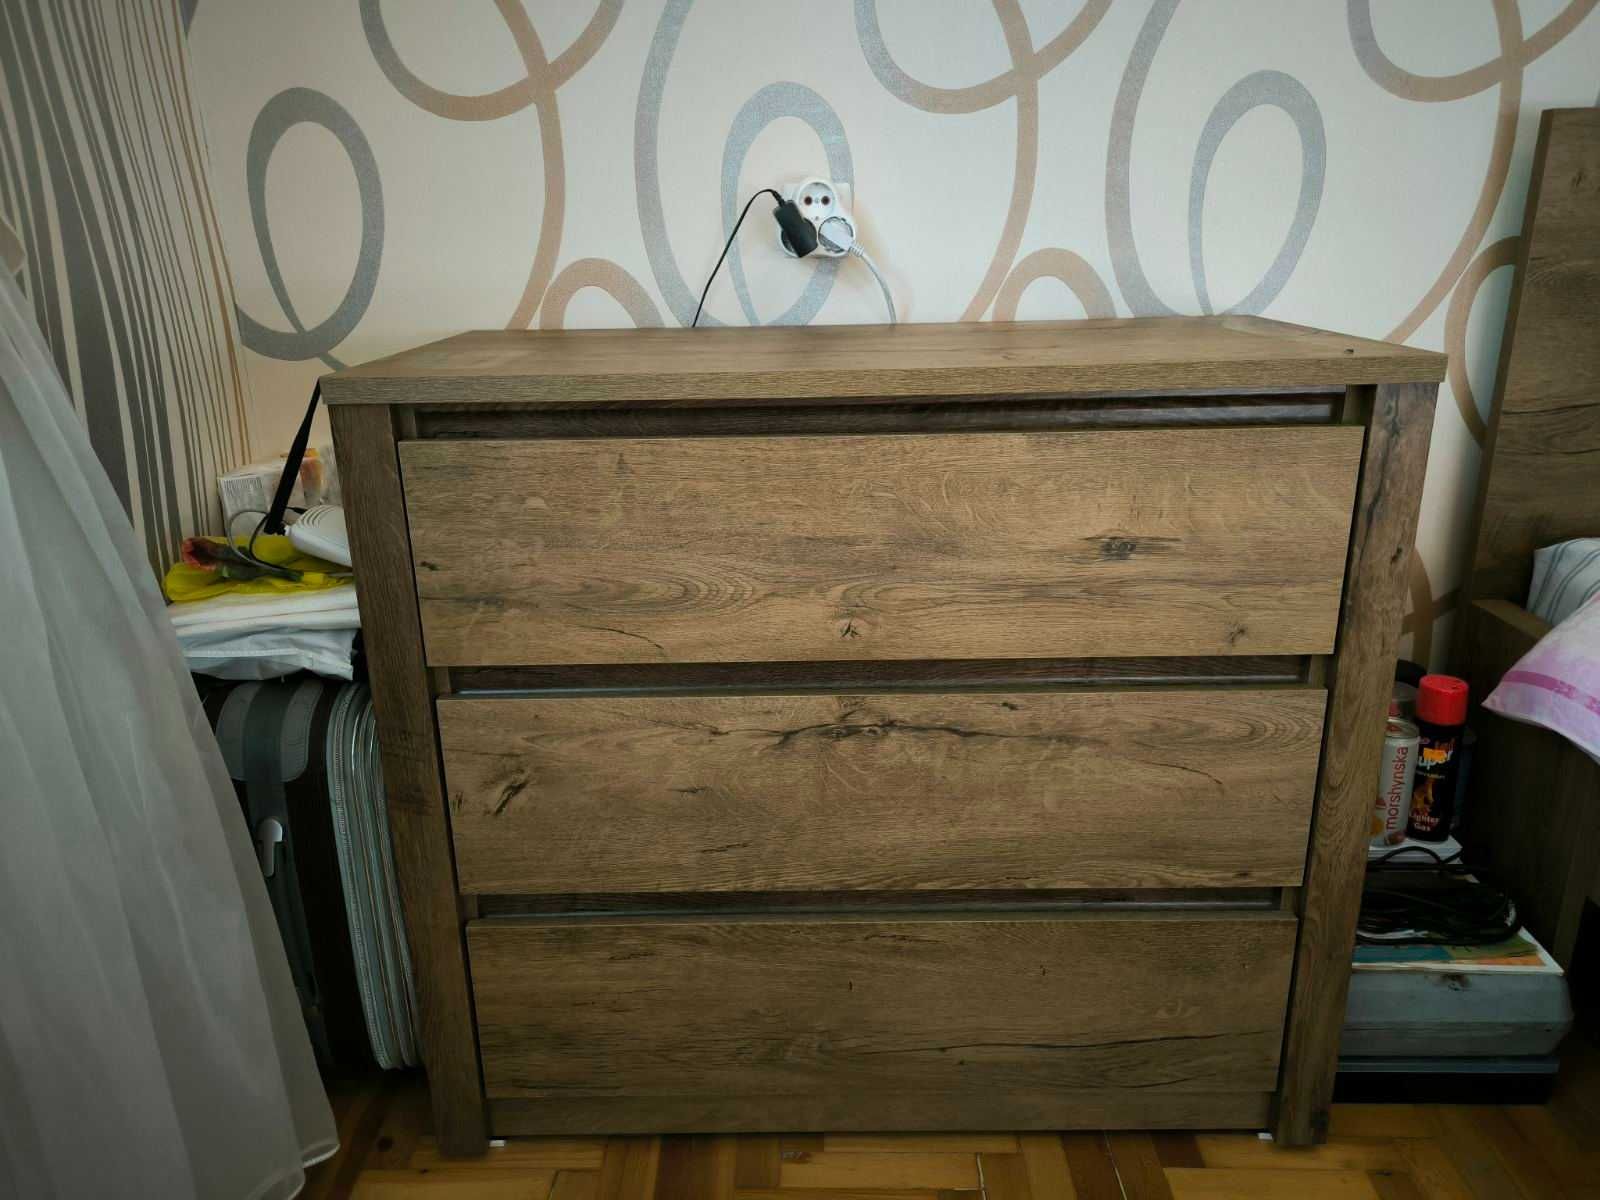 JYSK Шкаф Полный комплект мебели в спальню юск кровать комод тумбочка